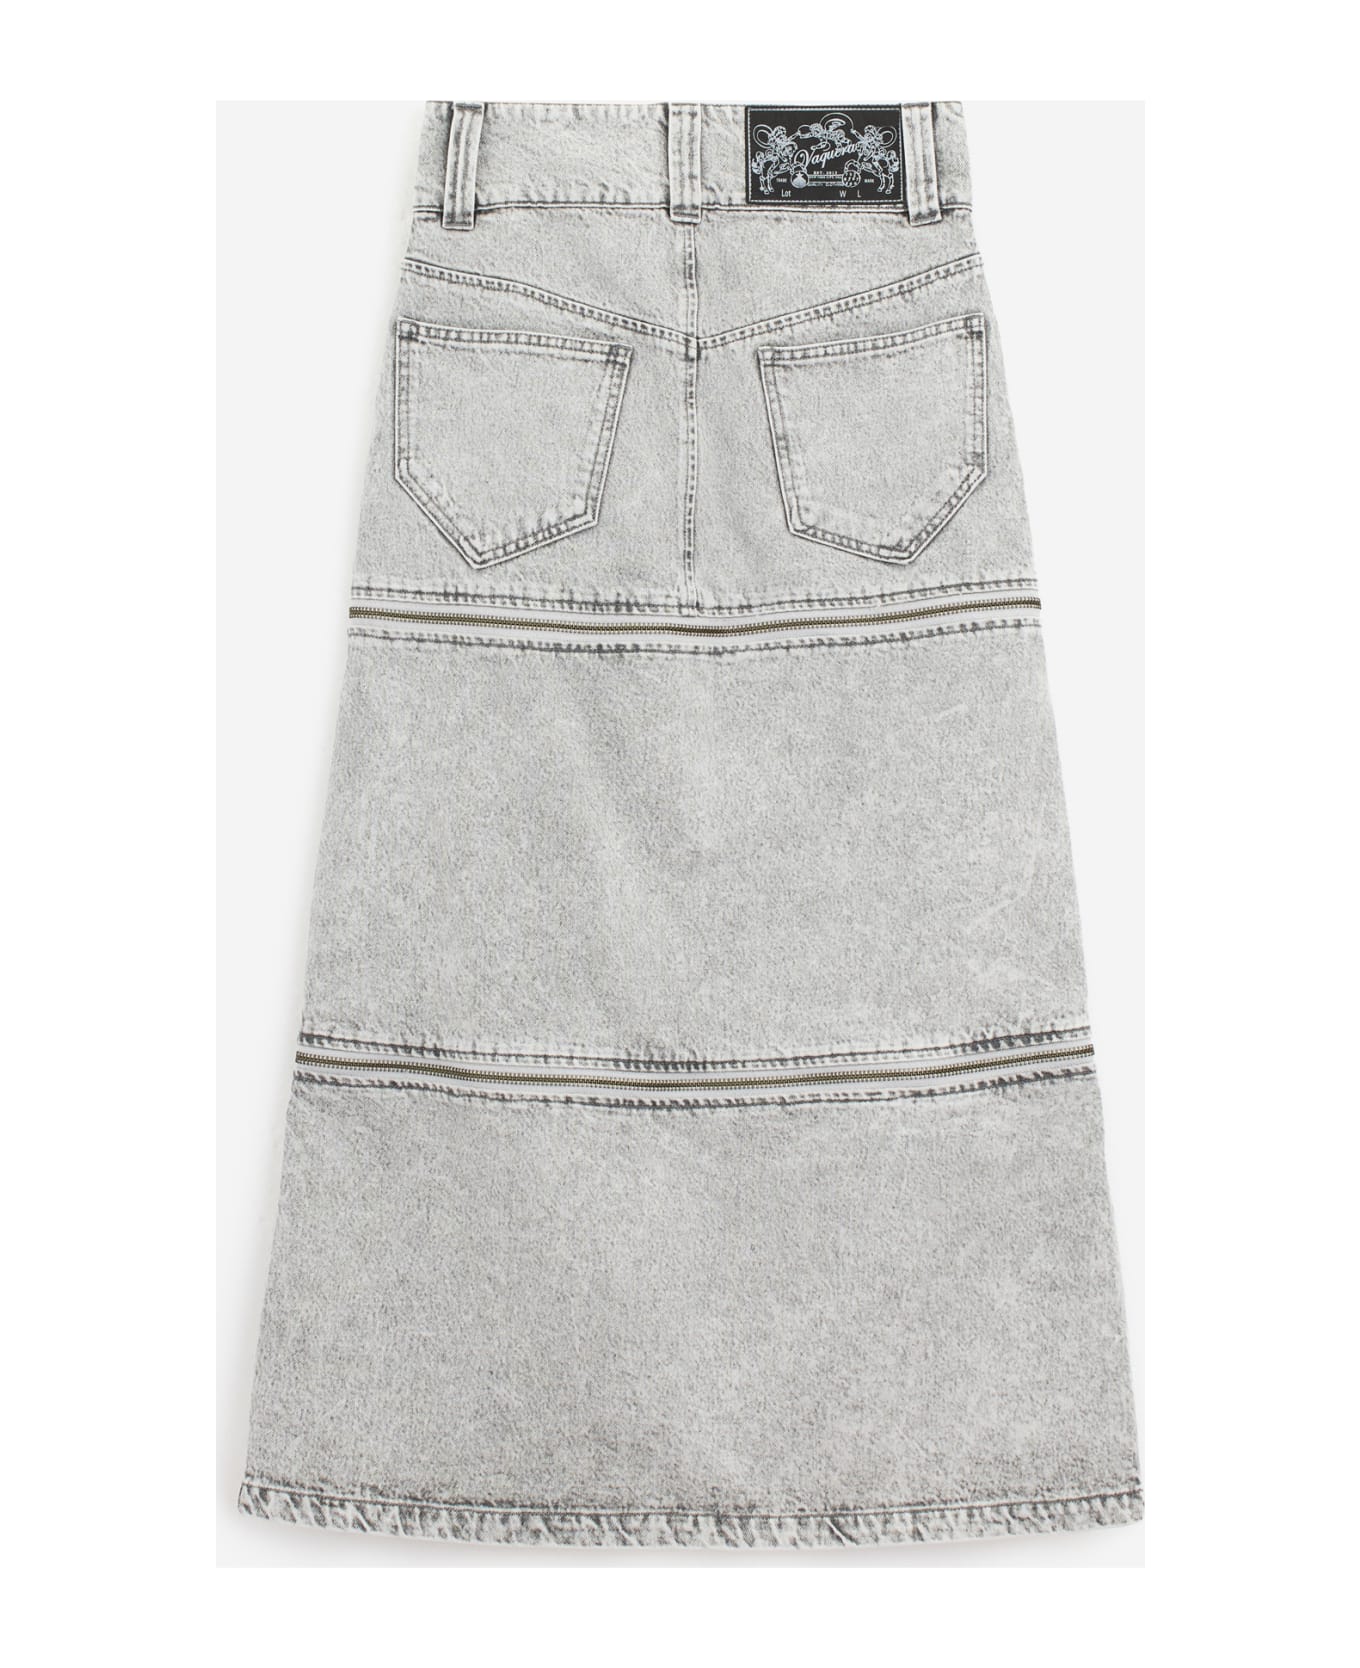 Vaquera Zipper Skirt Skirt - grey スカート